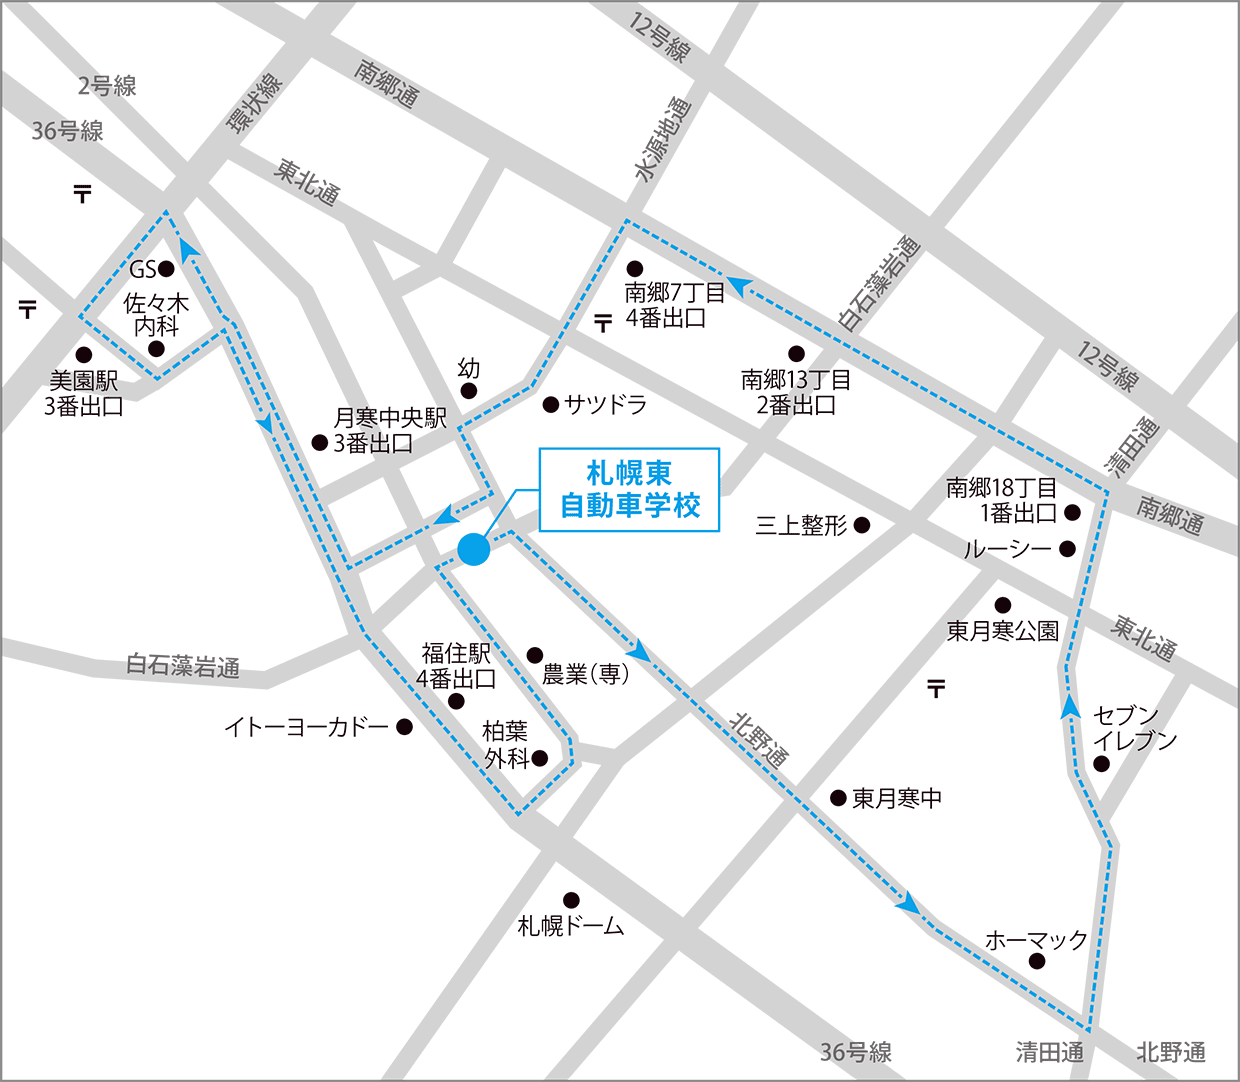 地下鉄駅循環バス路線図